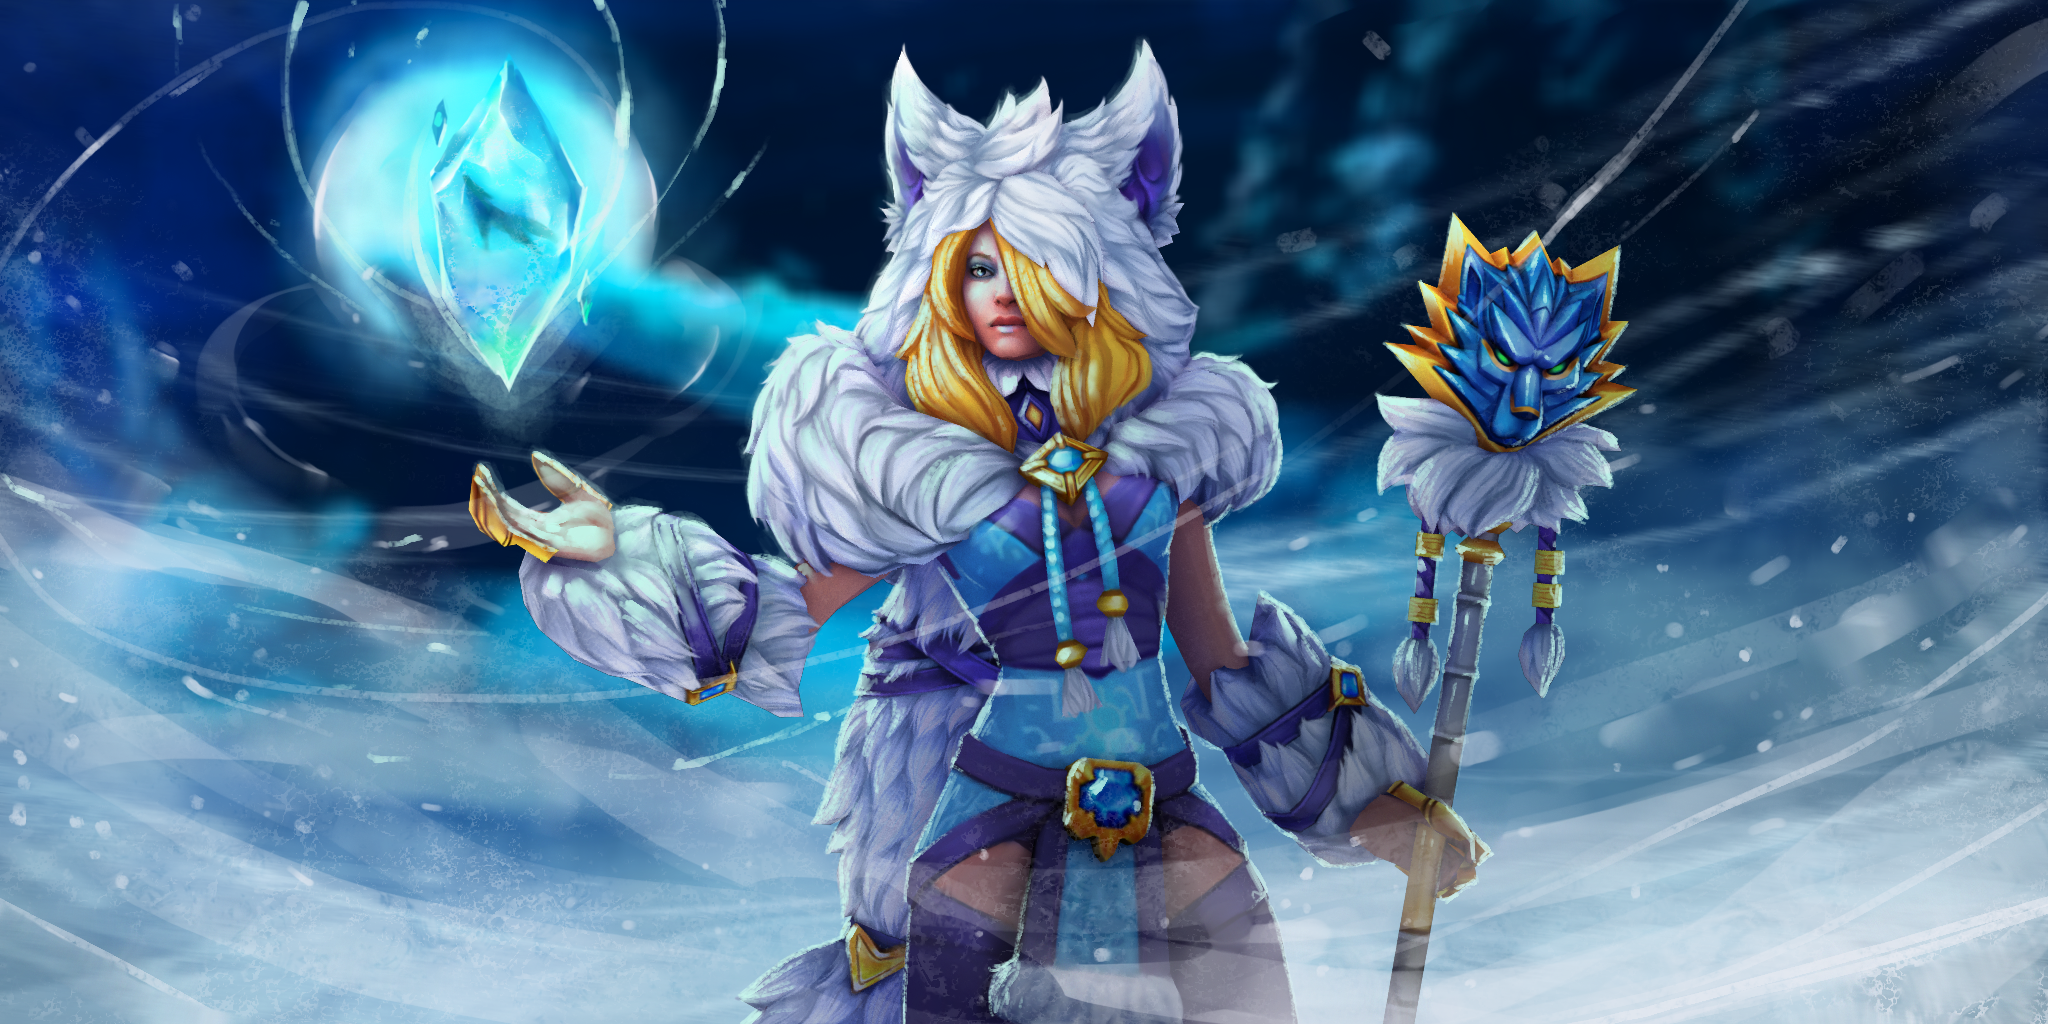 Crystal Maiden: Wolf's Spirit.